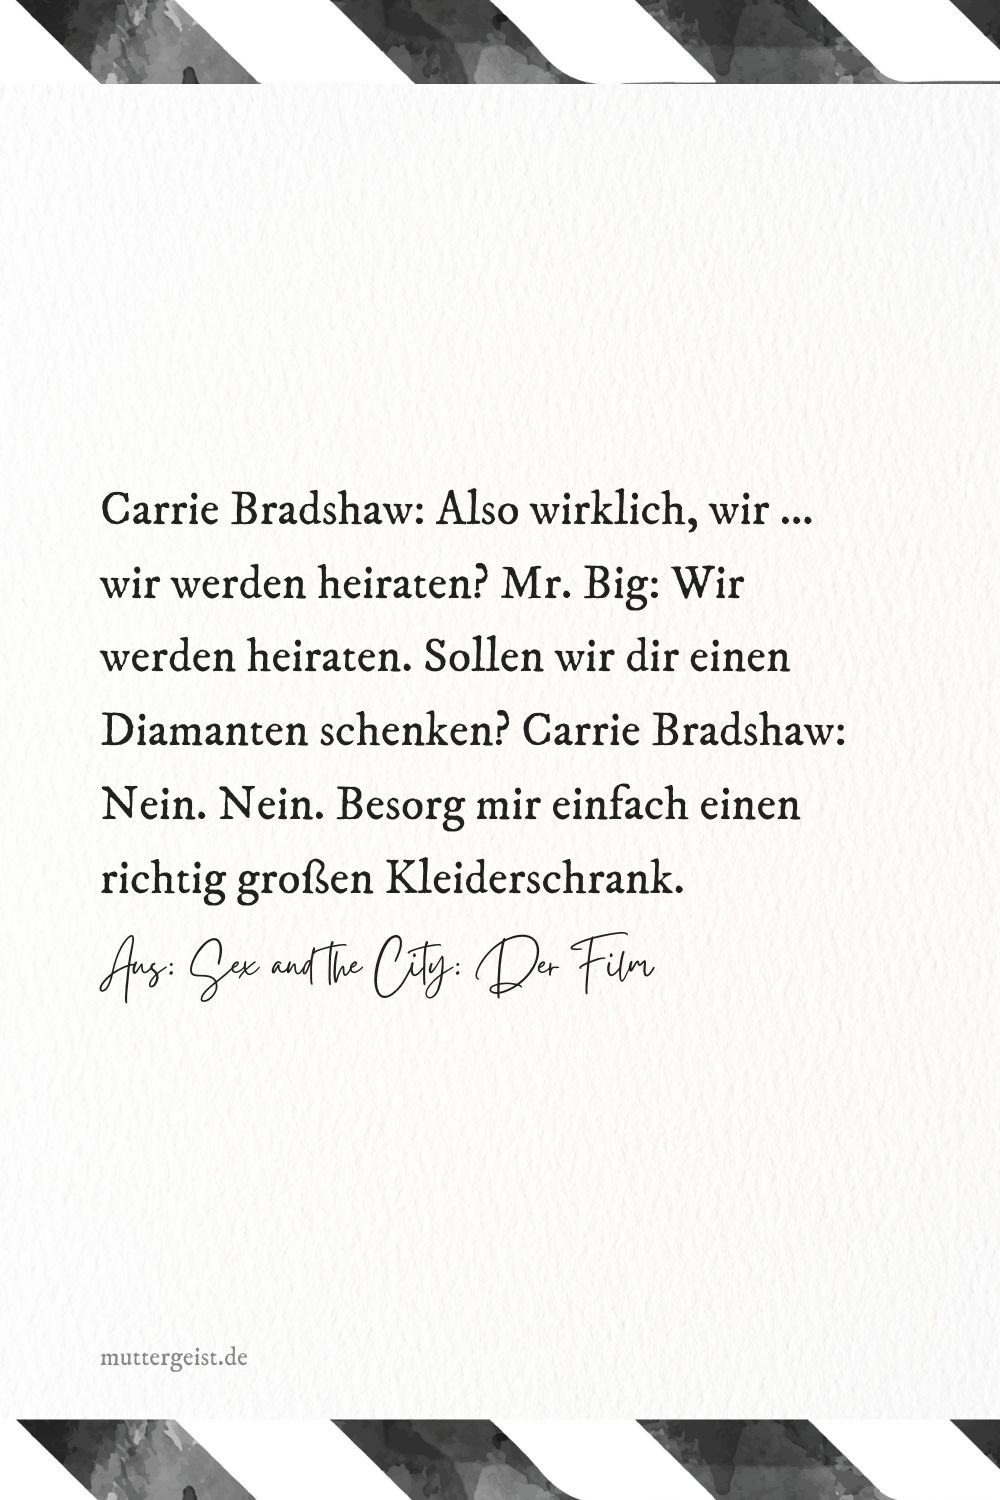 Carrie Bradshaw: Also wirklich, wir ... wir werden heiraten? Mr. Big: Wir werden heiraten.